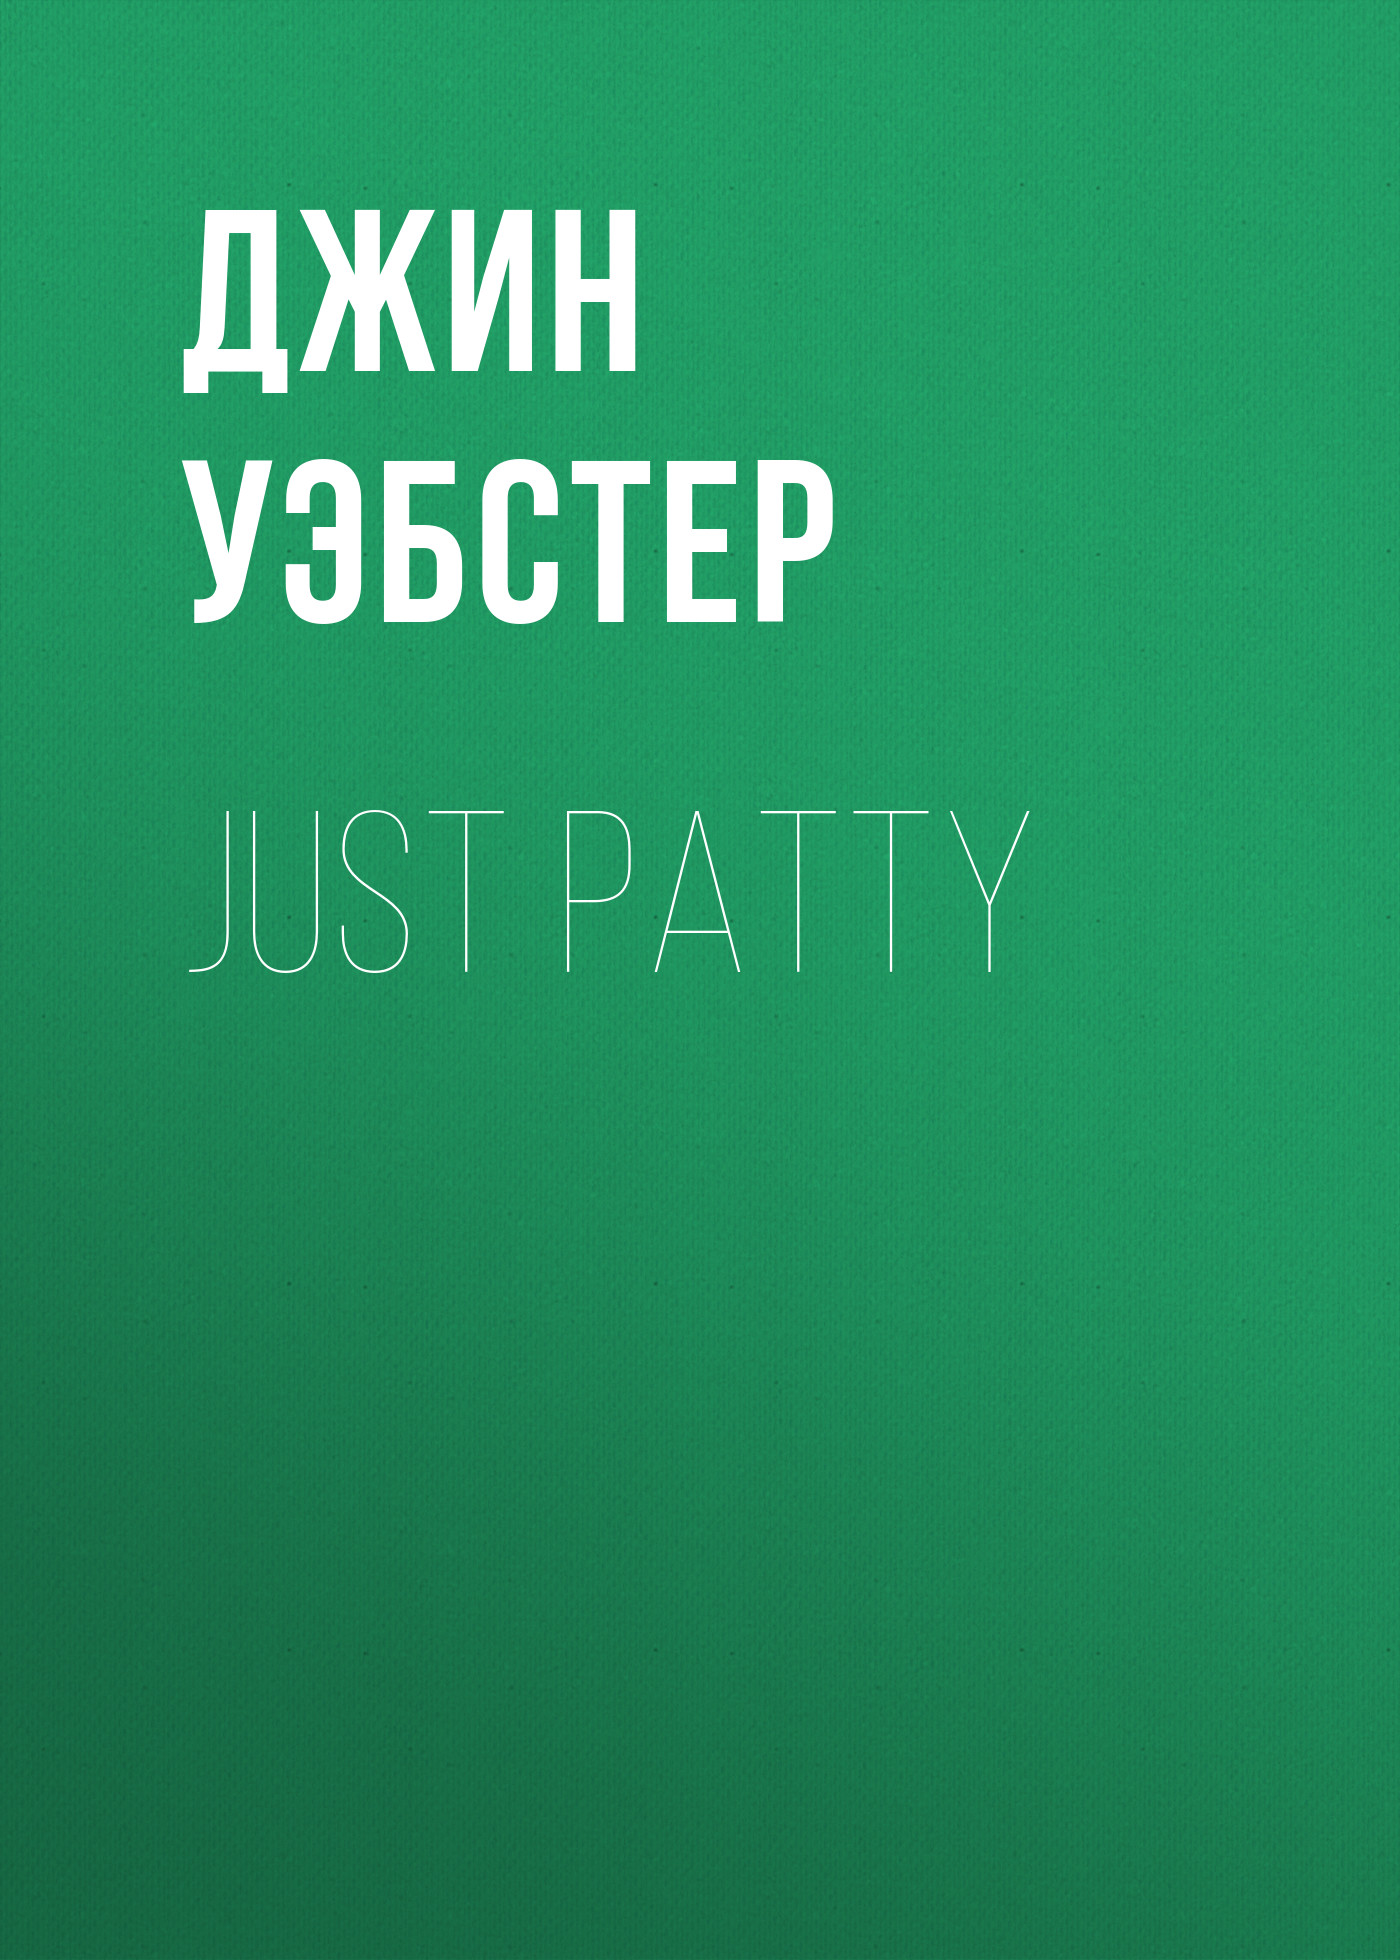 Книга Just Patty из серии , созданная Джин Уэбстер, может относится к жанру Зарубежные детские книги, Зарубежная старинная литература, Зарубежная классика. Стоимость электронной книги Just Patty с идентификатором 34842054 составляет 0 руб.